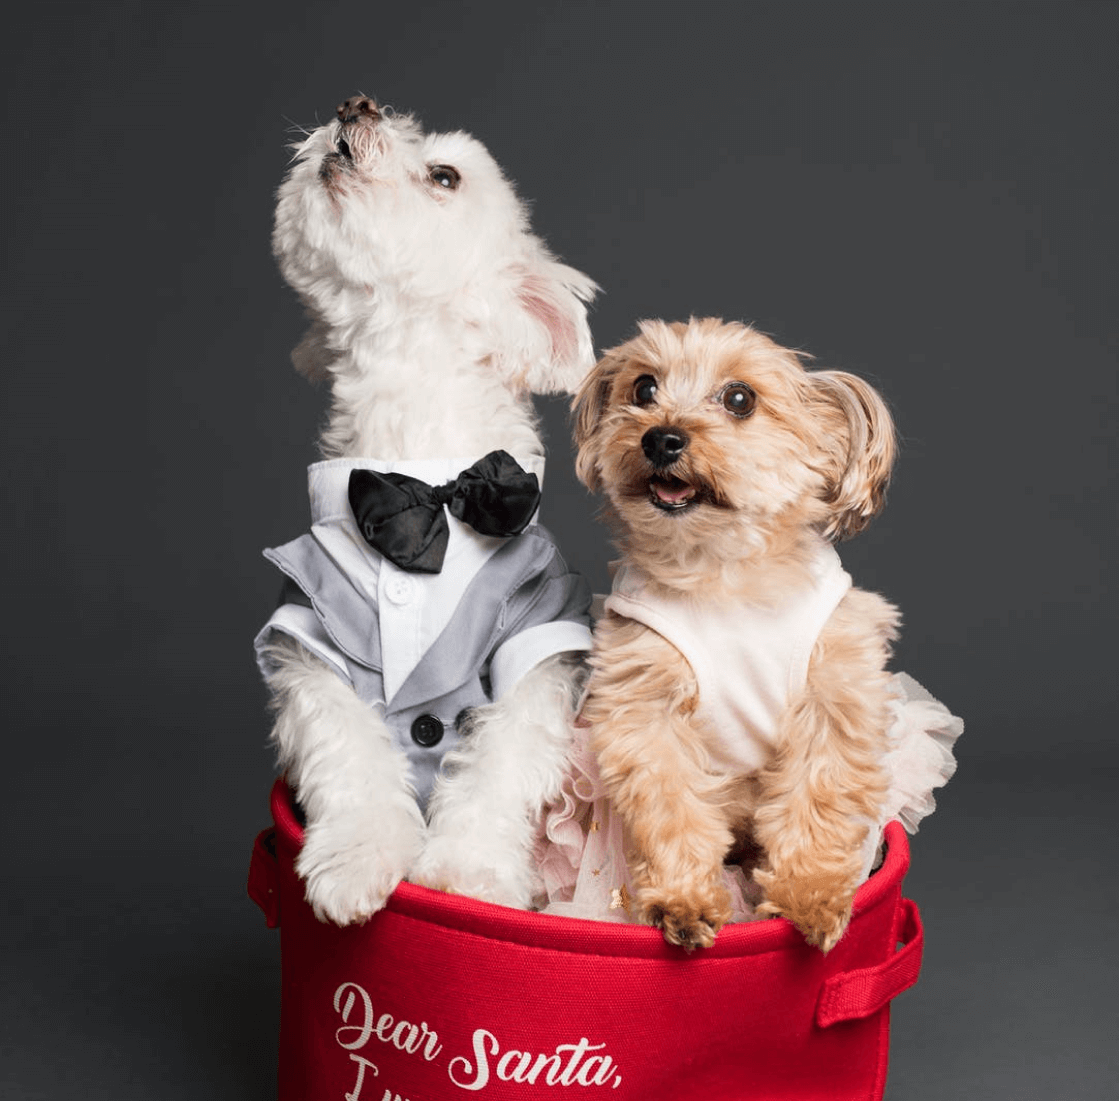 mogli and alba, two, small dogs, in a bucket. Mogli wears a tuxedo, Alba a tutu